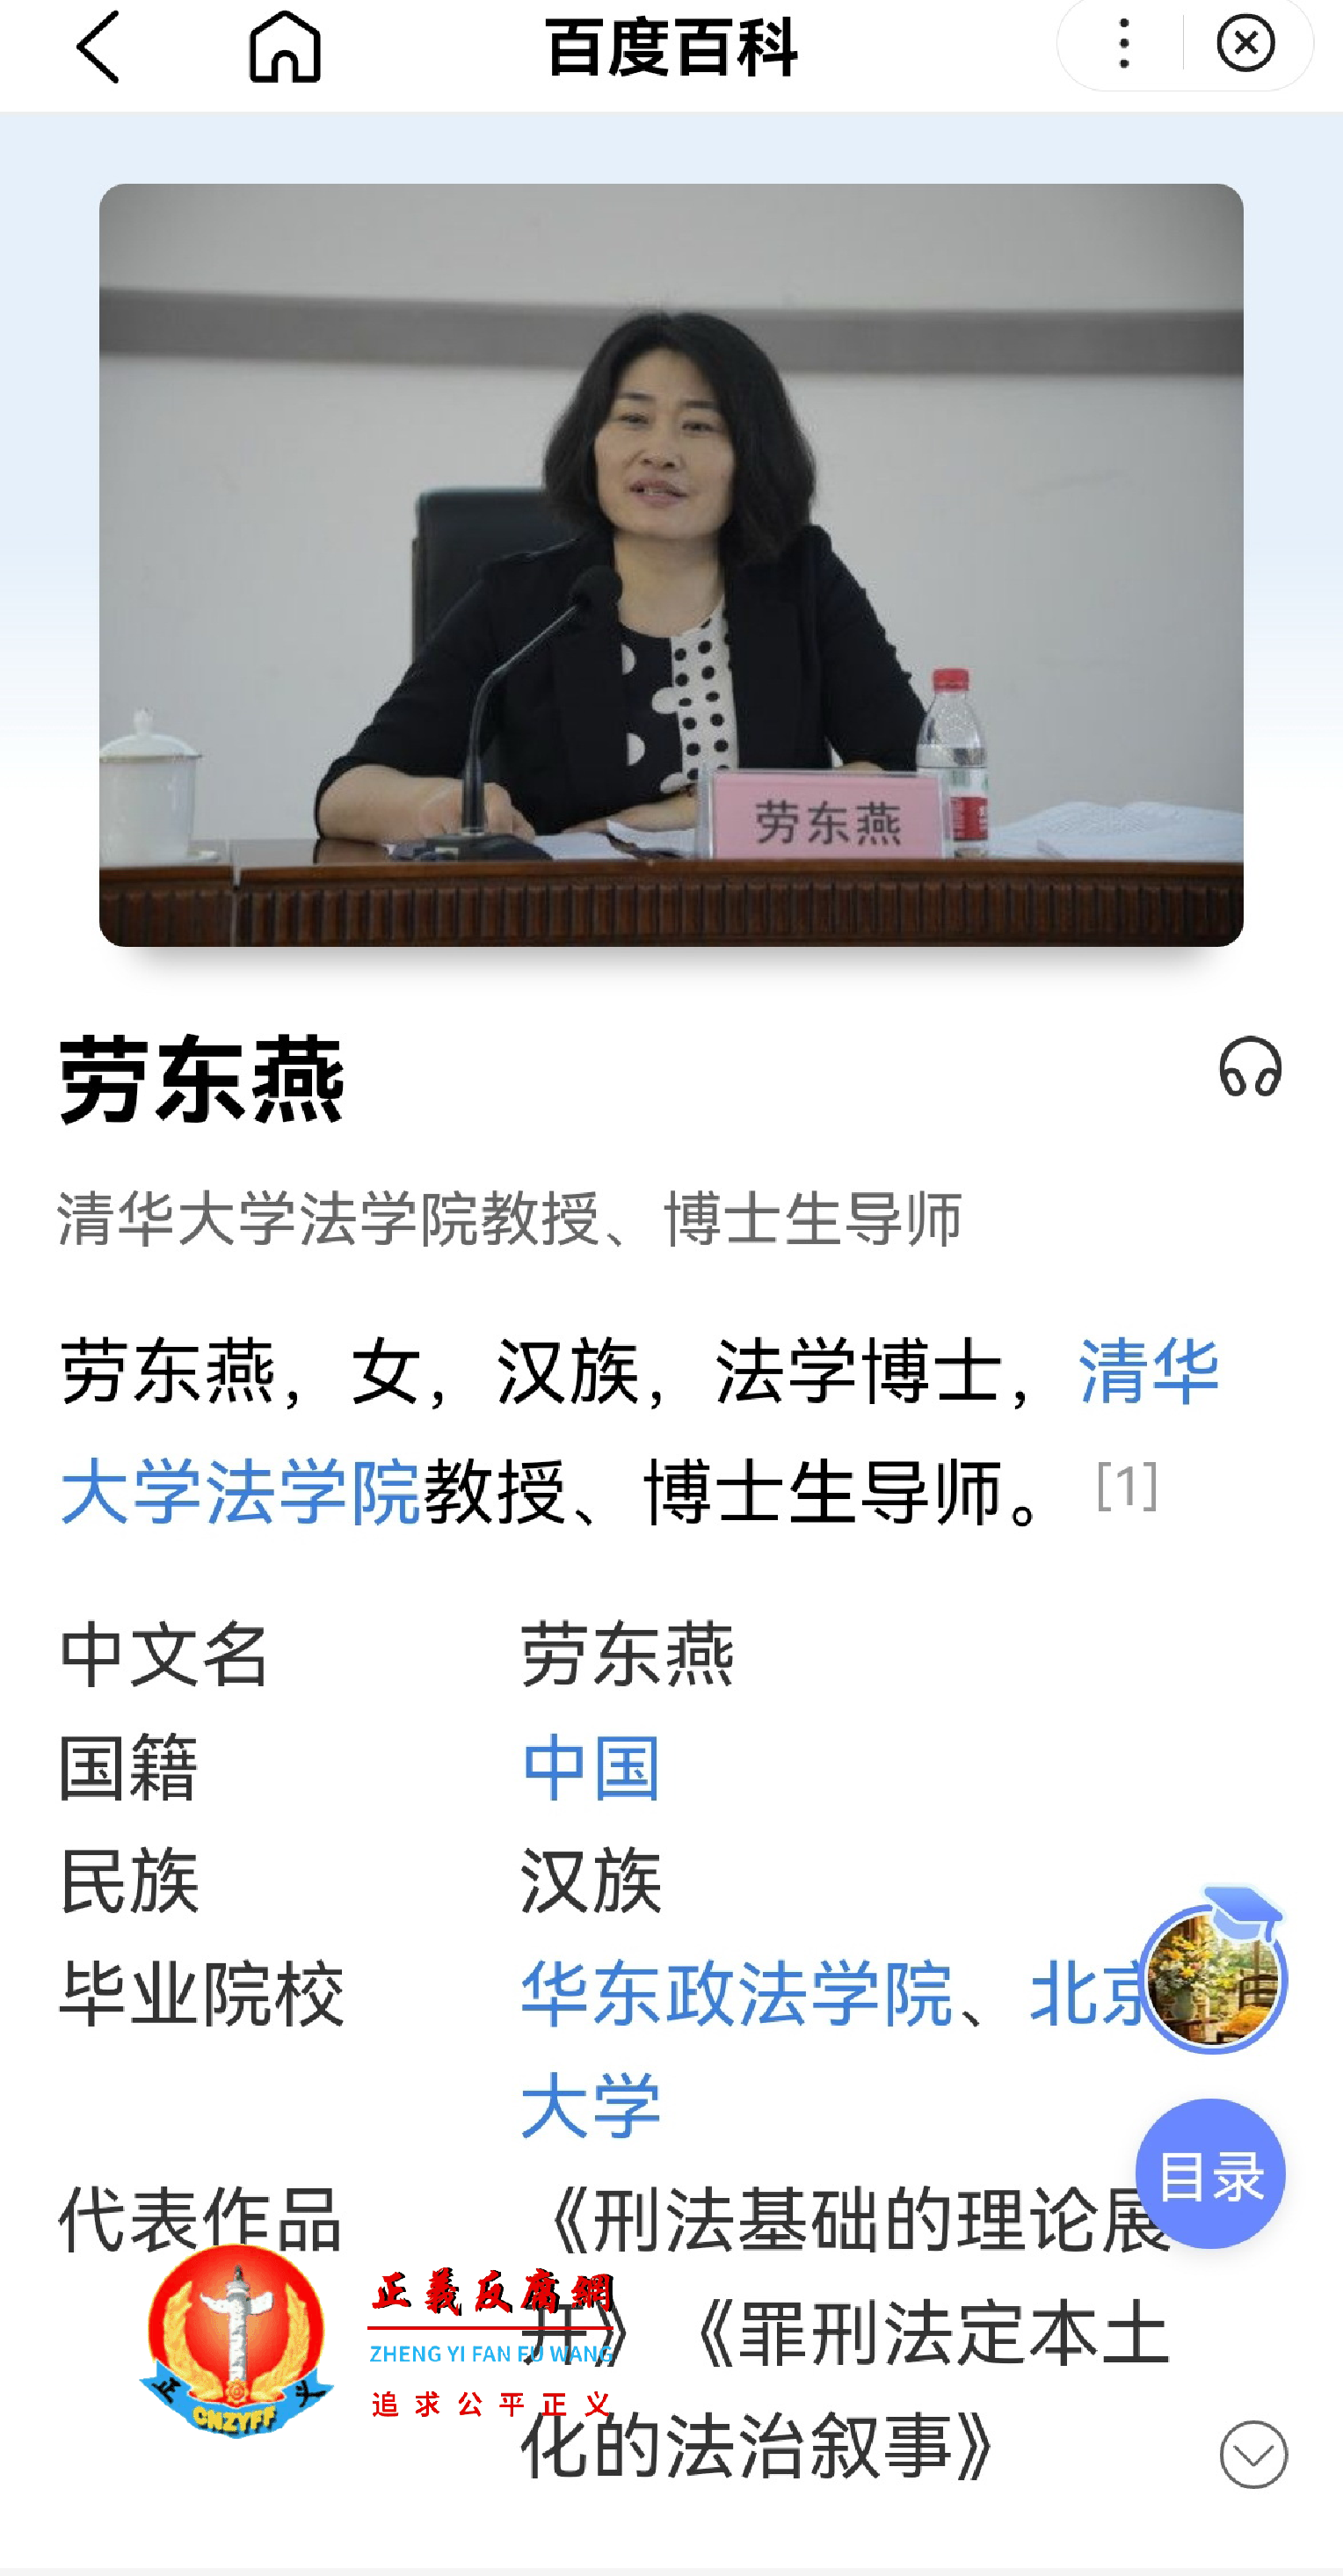 清华大学法学院教授劳东燕个人介绍。.png